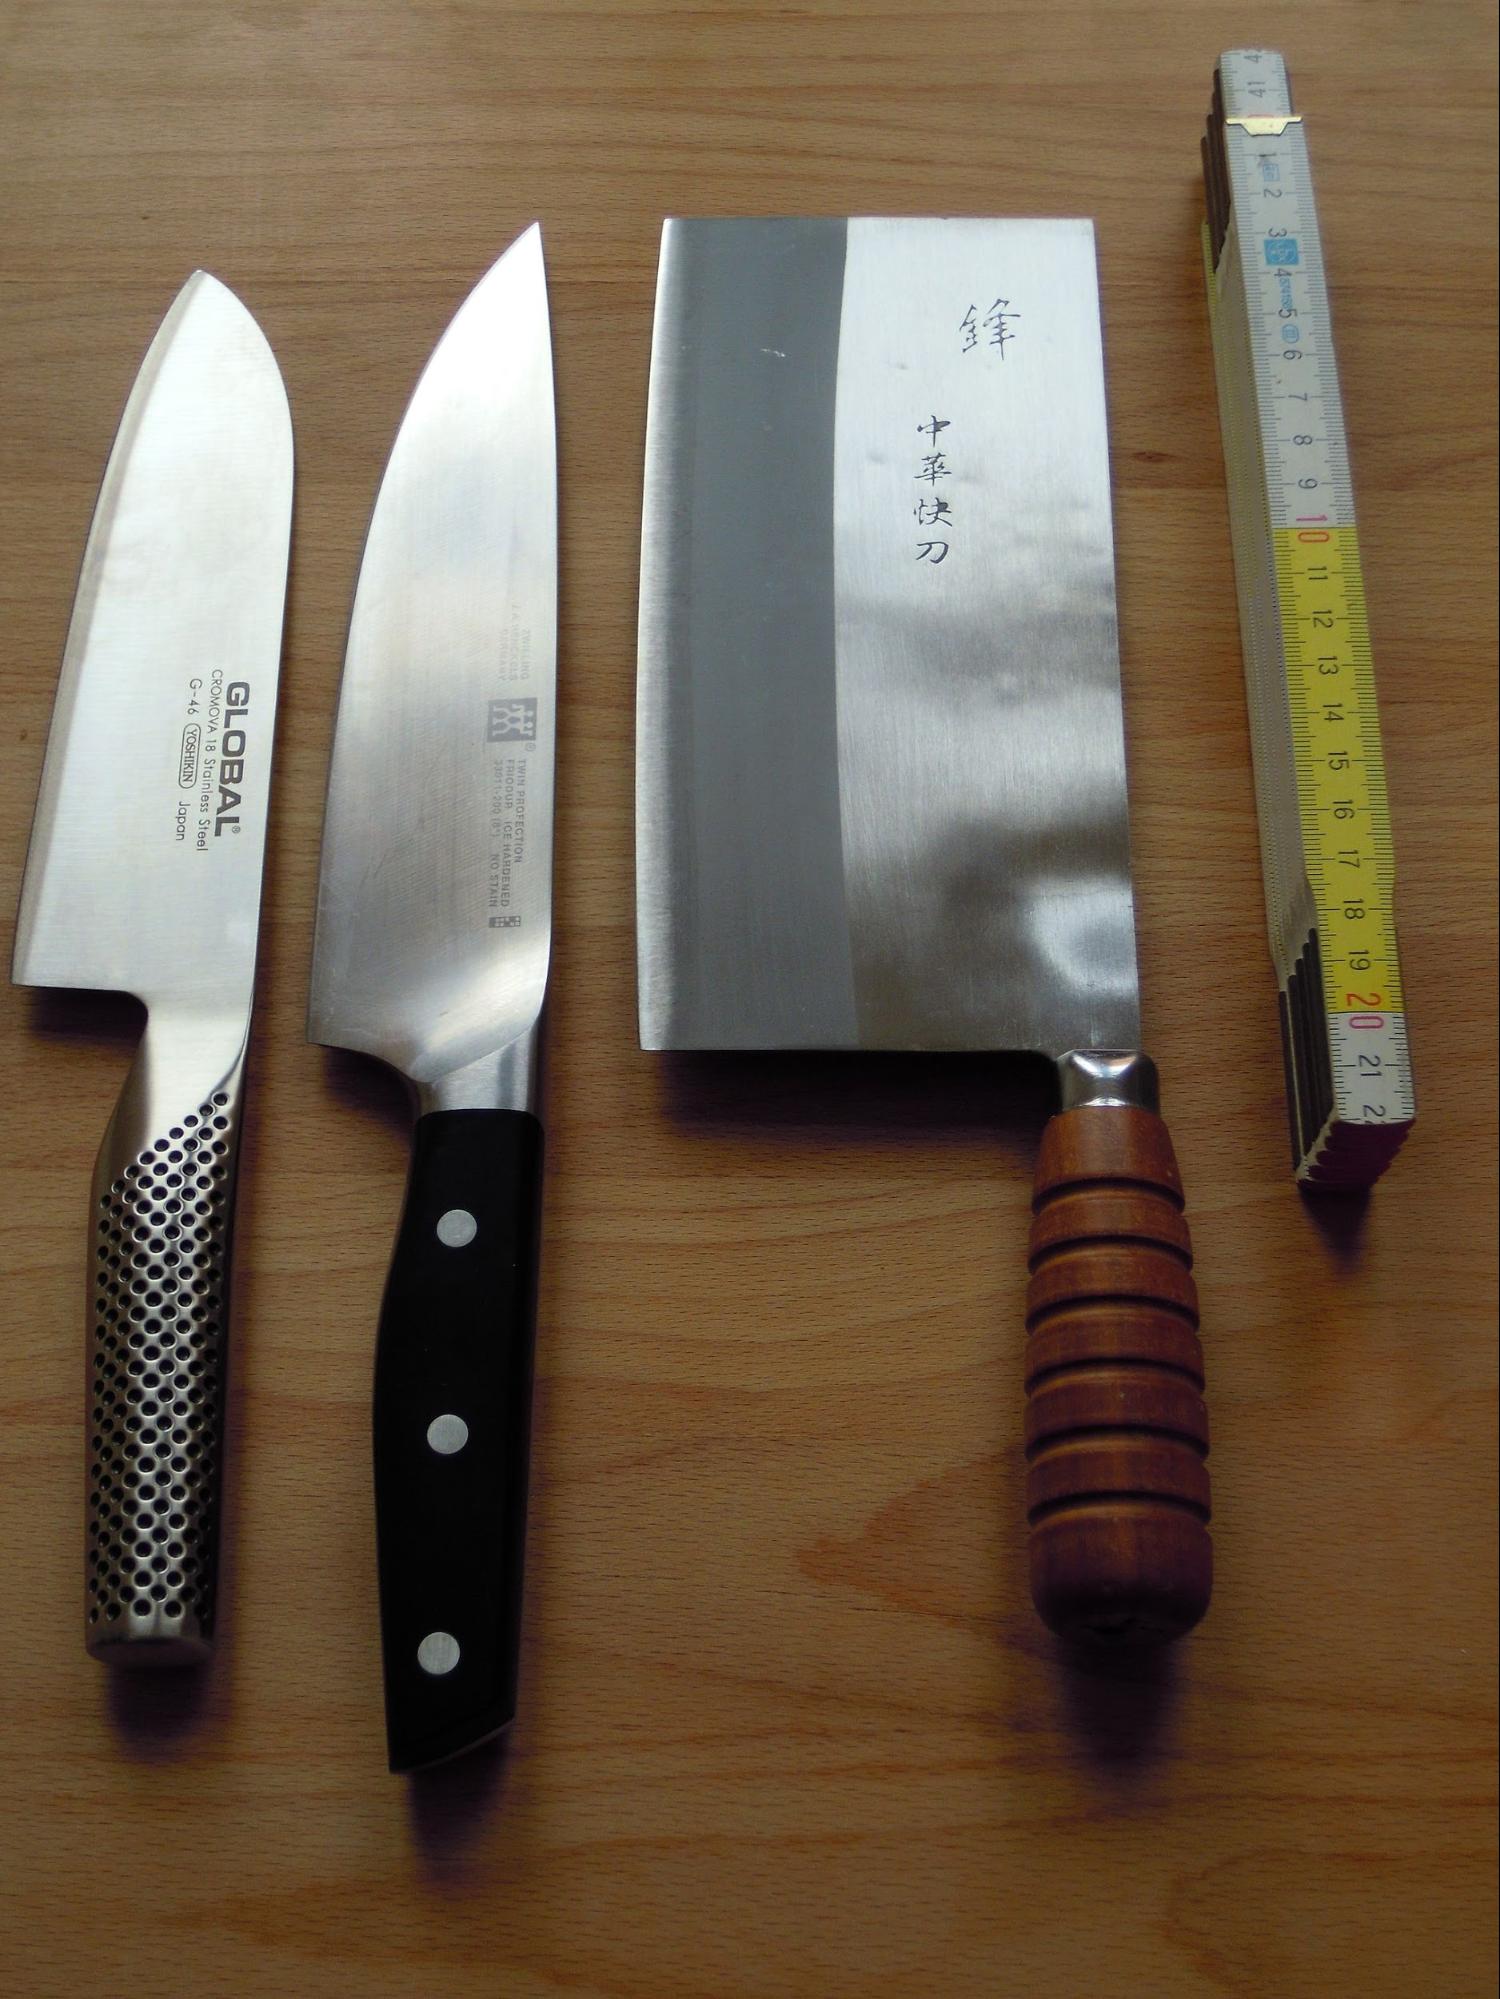 sharpening knives